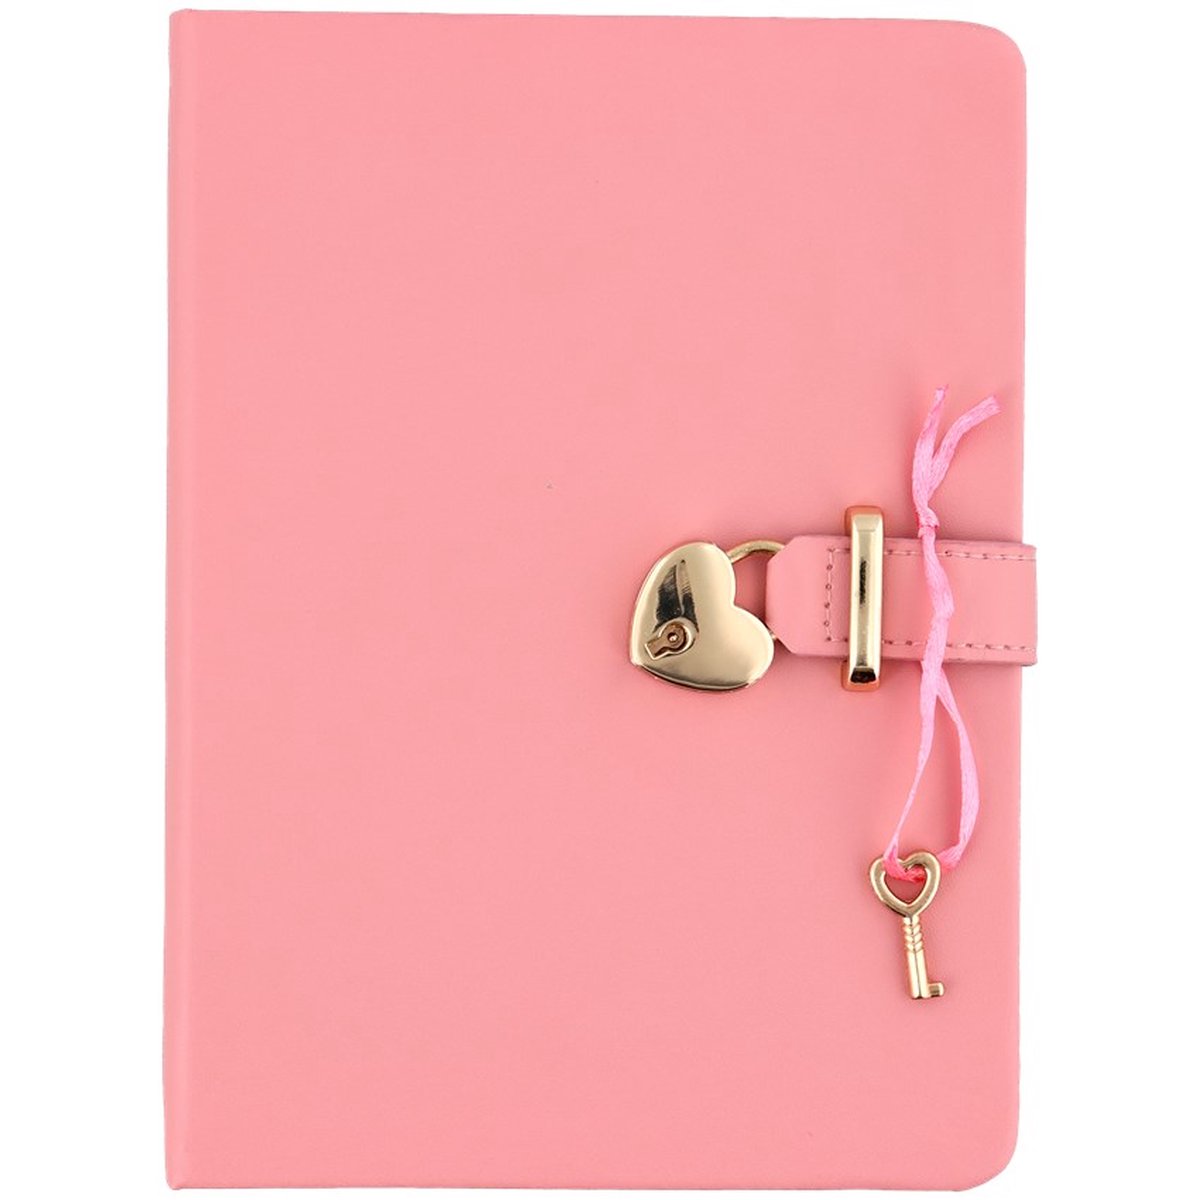 dagboek met goud slot oud roze 80 vel inclusief alpaca sleutelhanger